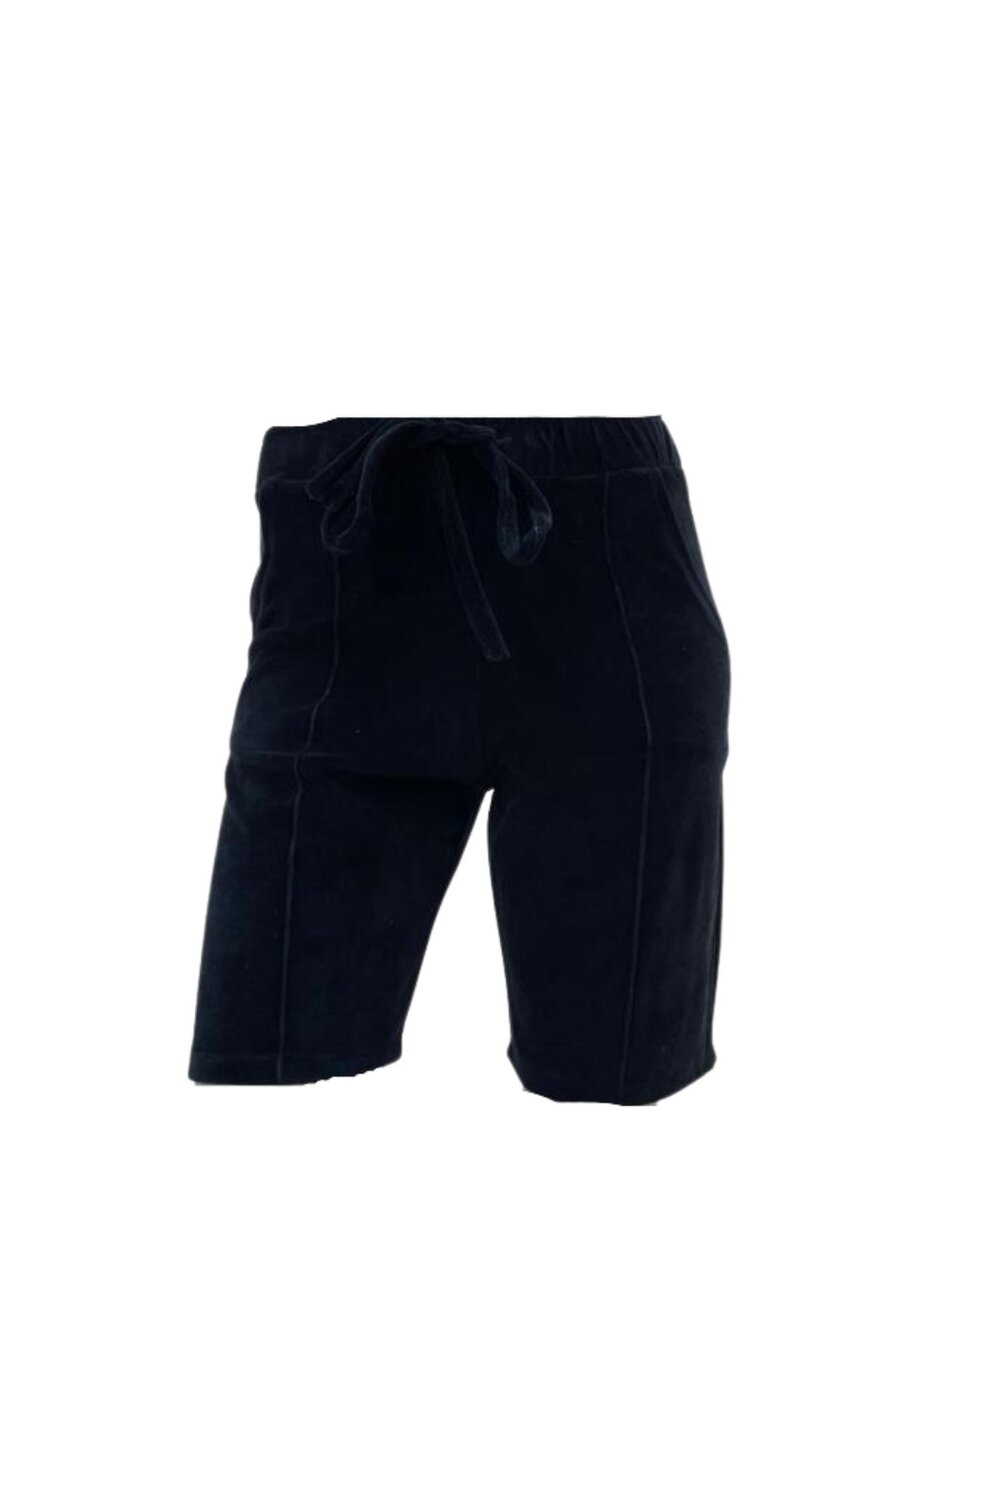 Pantaloni Scurti de Dama, din Catifea, Negru image4